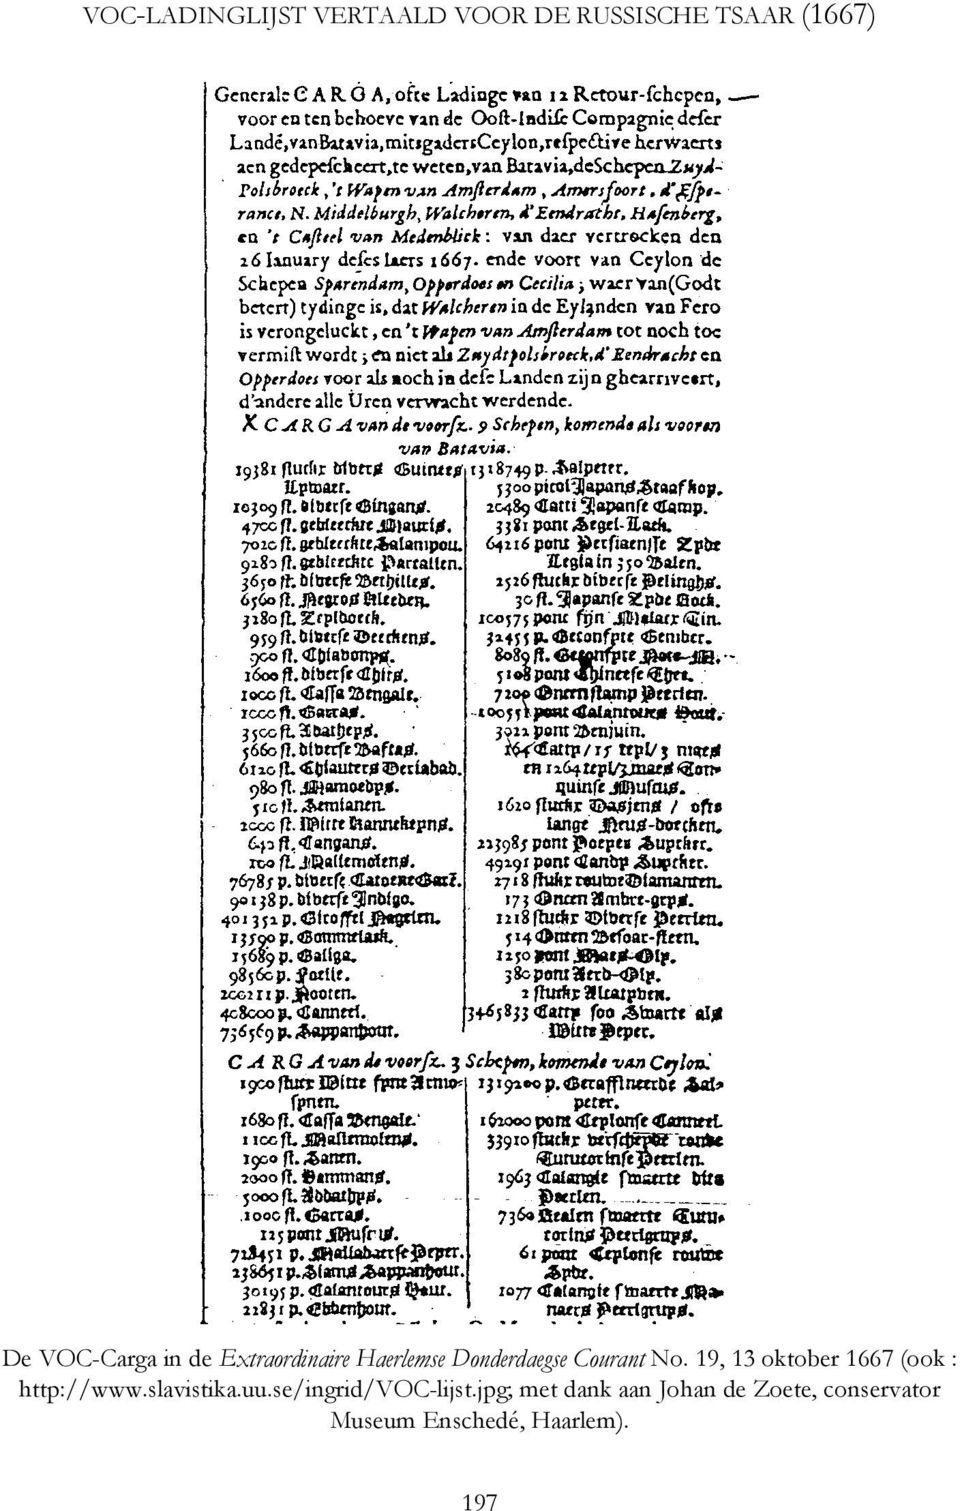 19, 13 oktober 1667 (ook : http://www.slavistika.uu.